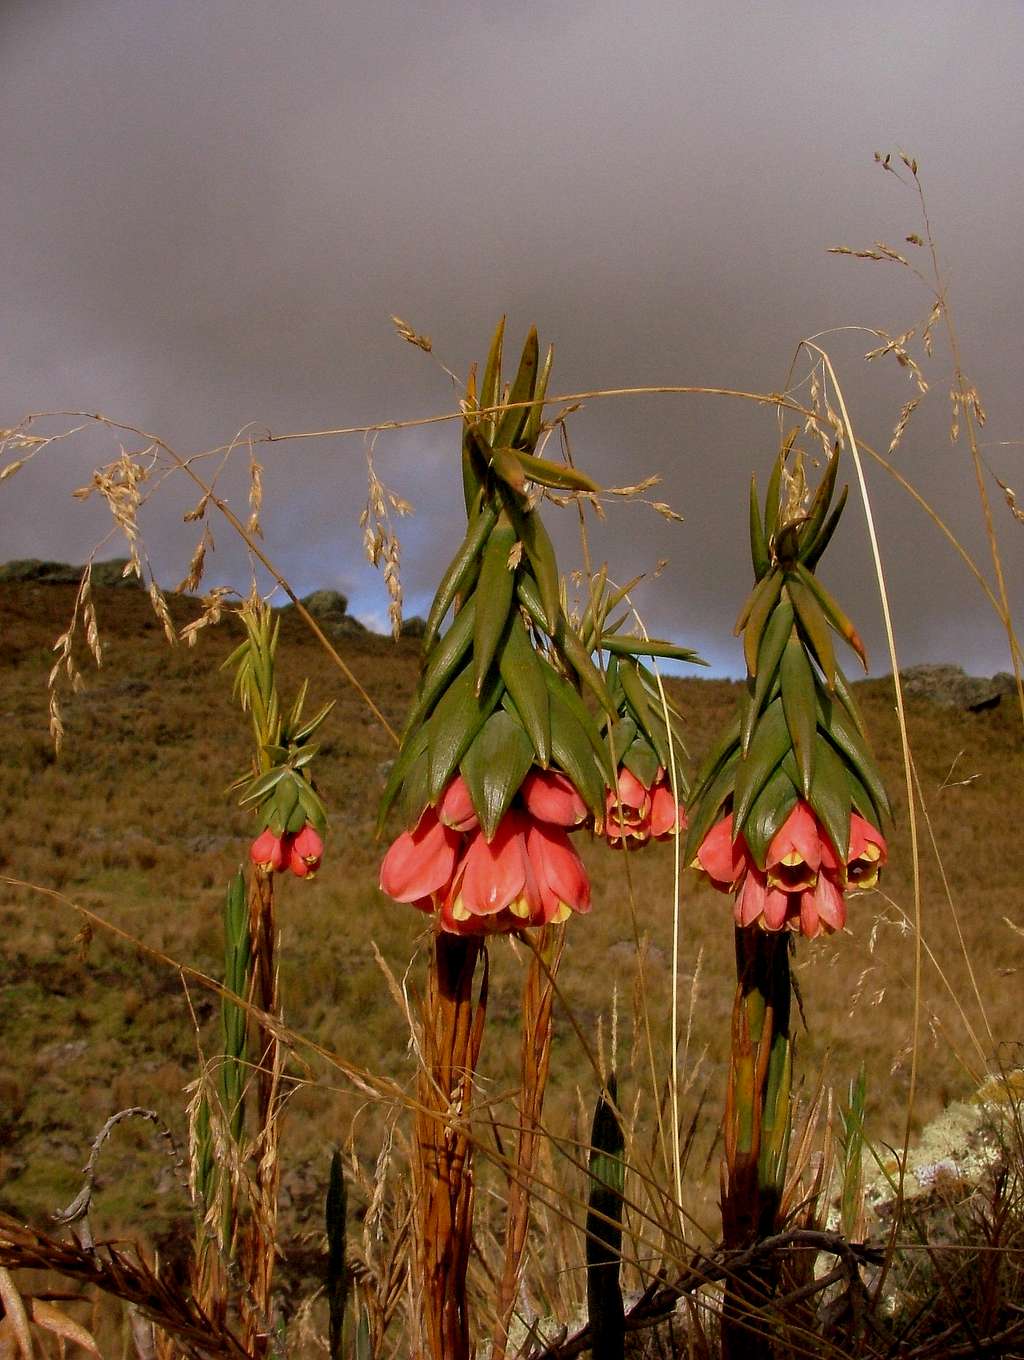 Inca Trail vegetation. Ecuador.